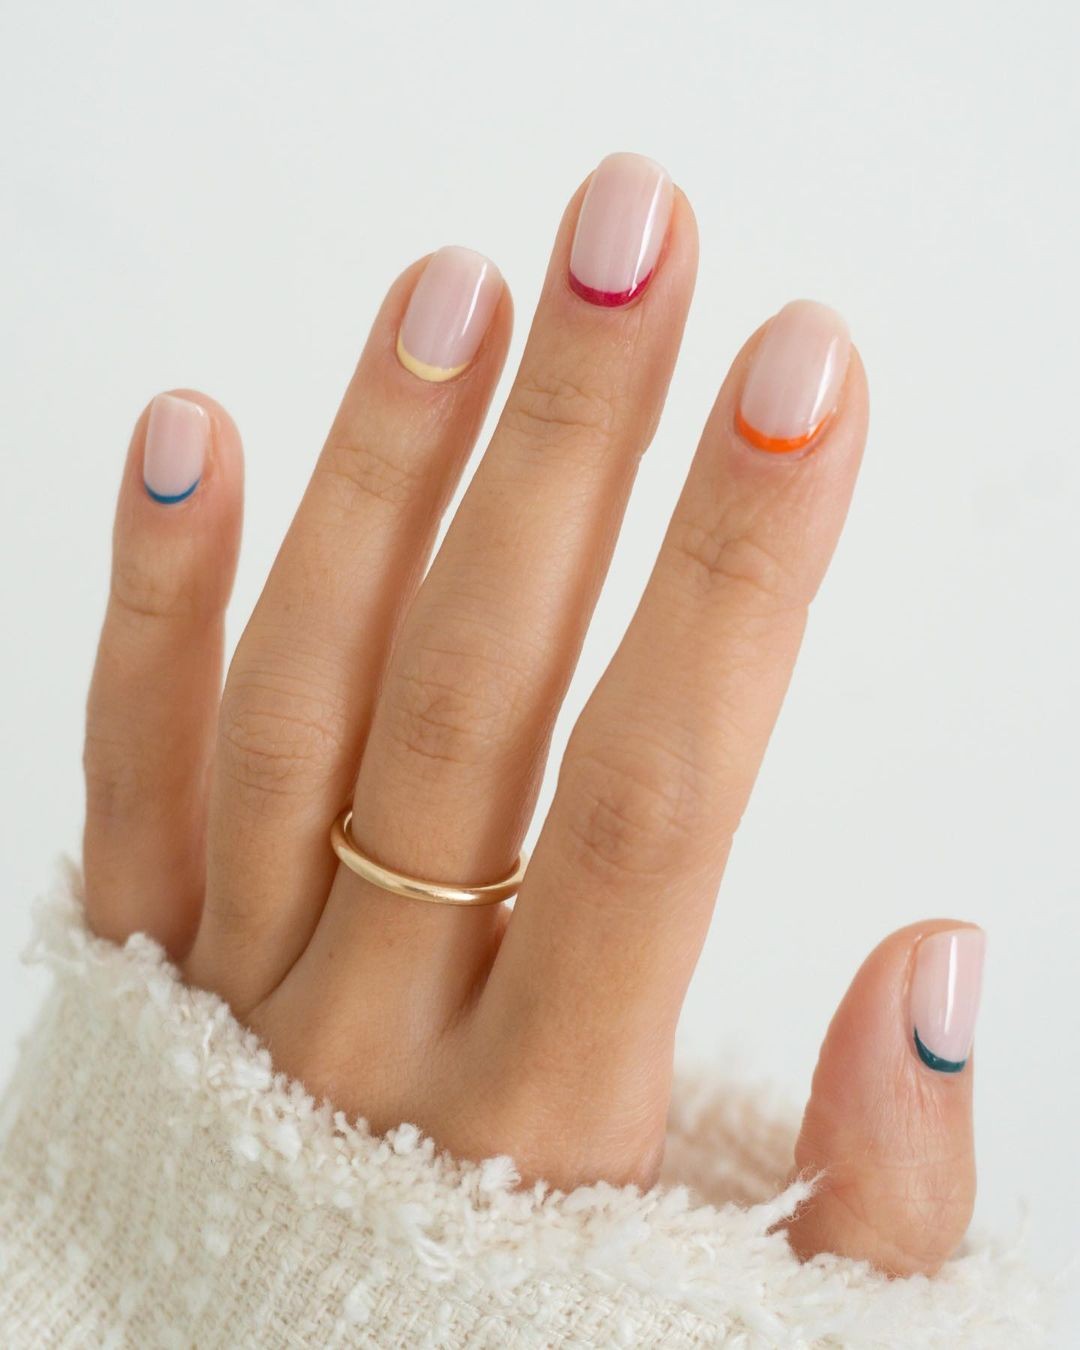 Francesinha minimalista é tendência de nail art (Foto: Reprodução/Instagram @m.o.n.a.j)